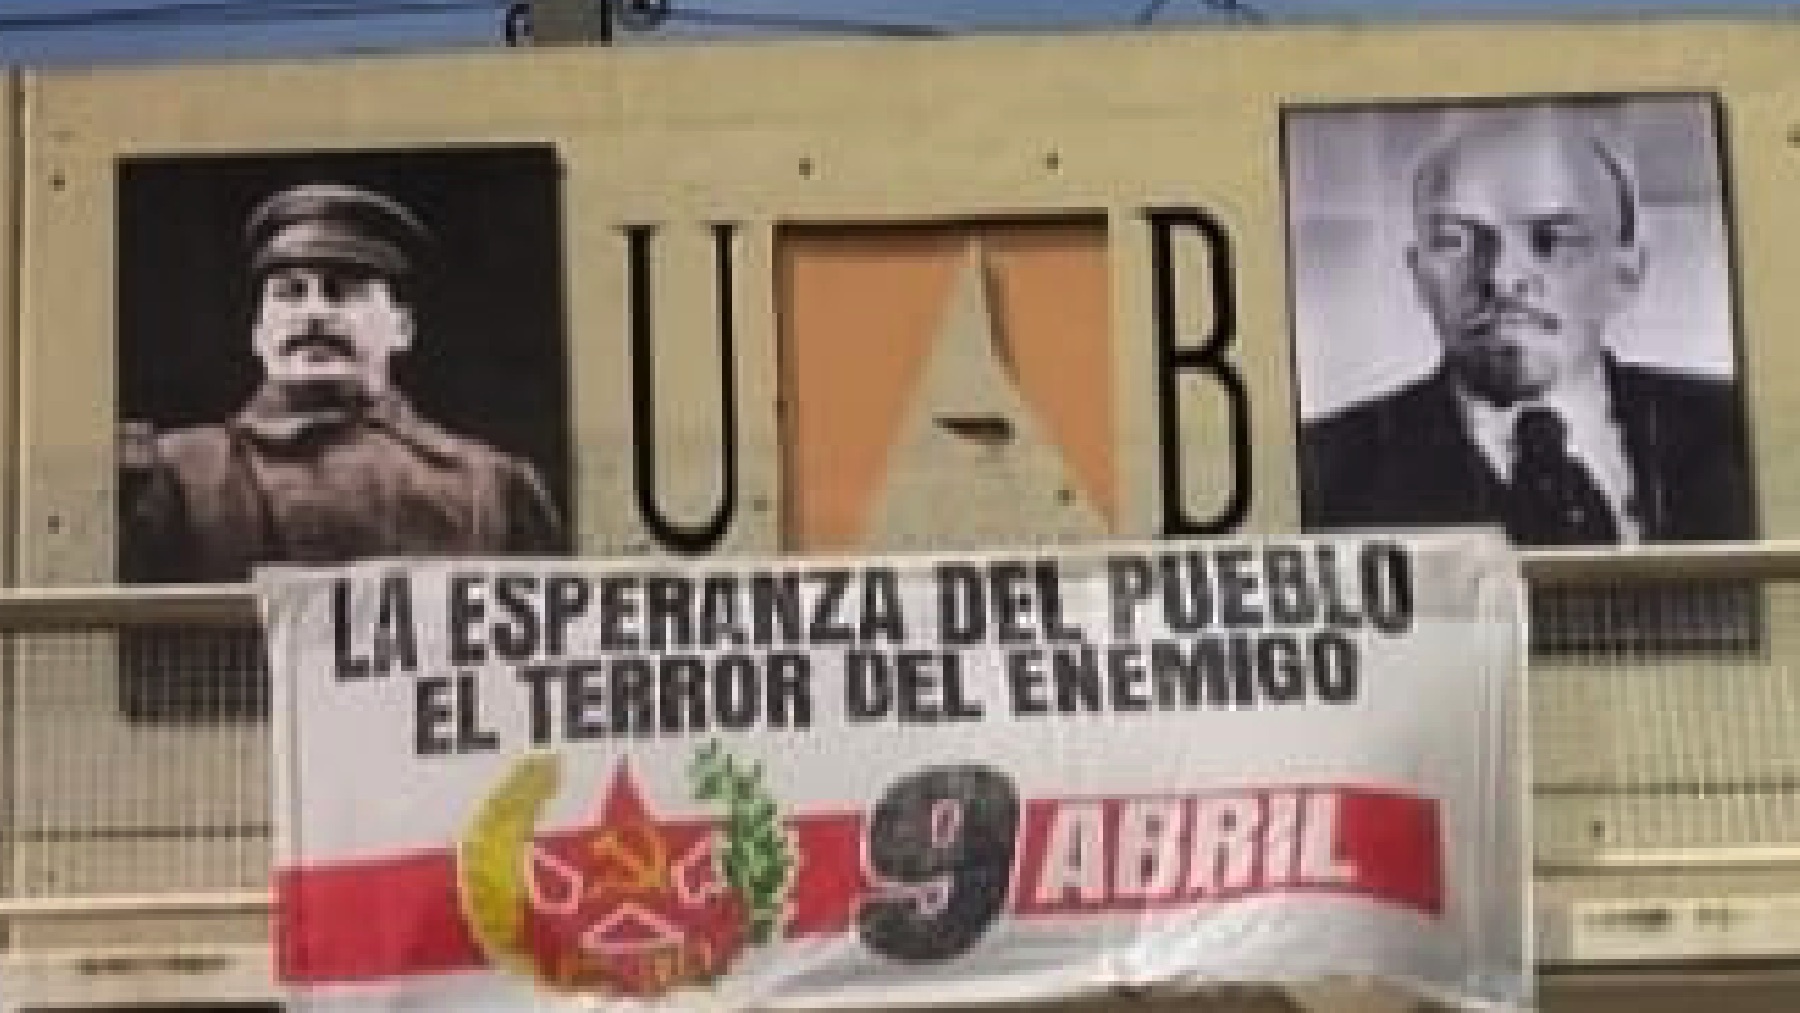 La Universidad Autónoma de Barcelona con los rostros de Stalin y Lenin.